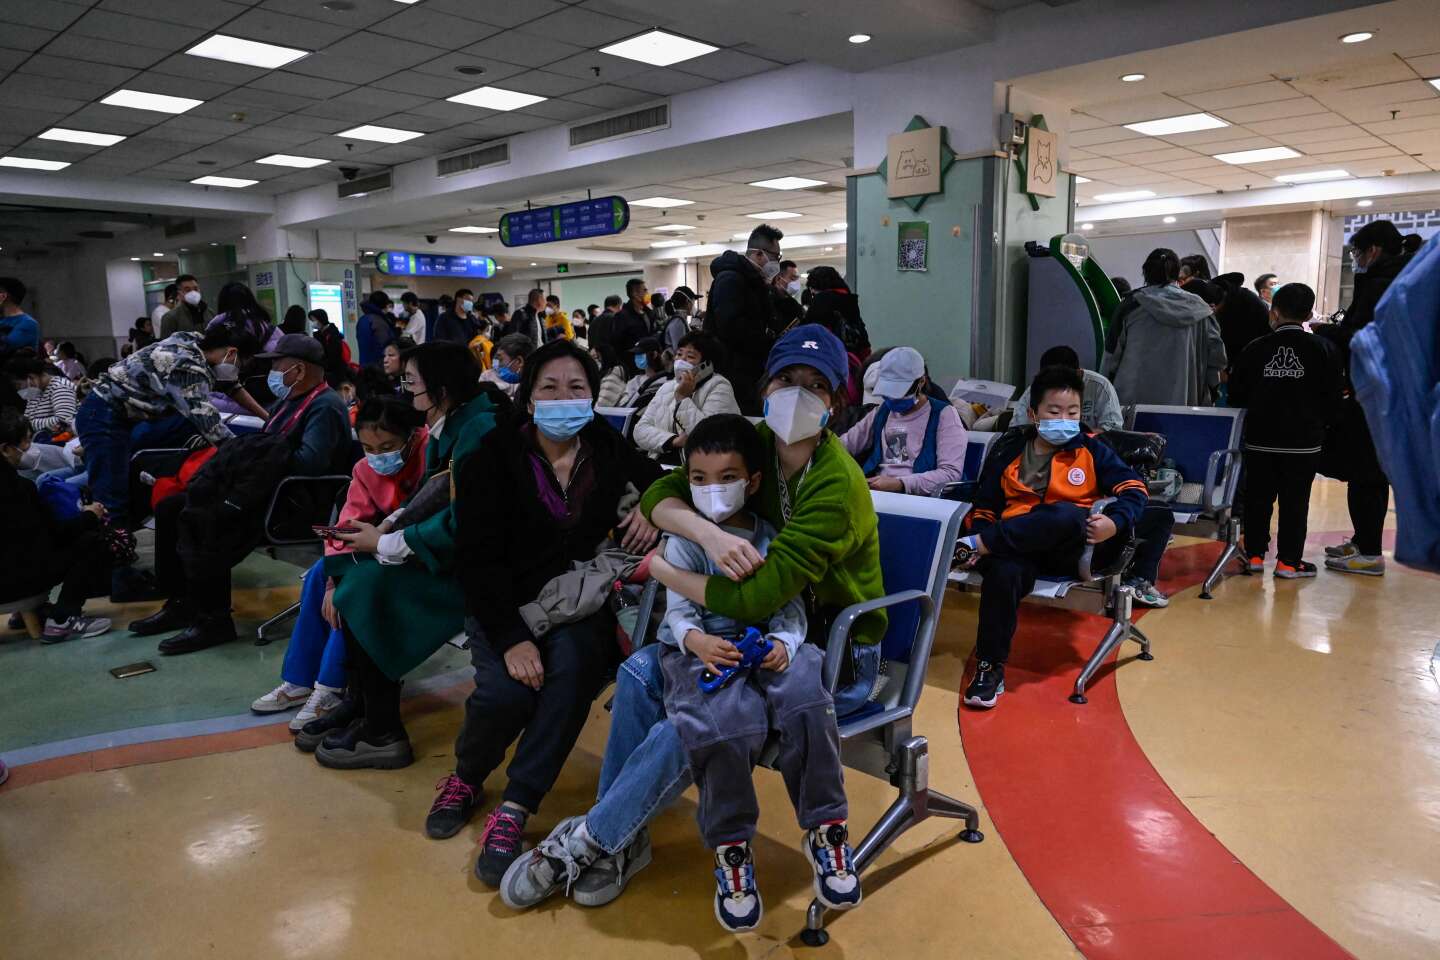 Flambée de maladies respiratoires : la Chine ne signale « aucun pathogène nouveau ou inhabituel », selon l’OMS